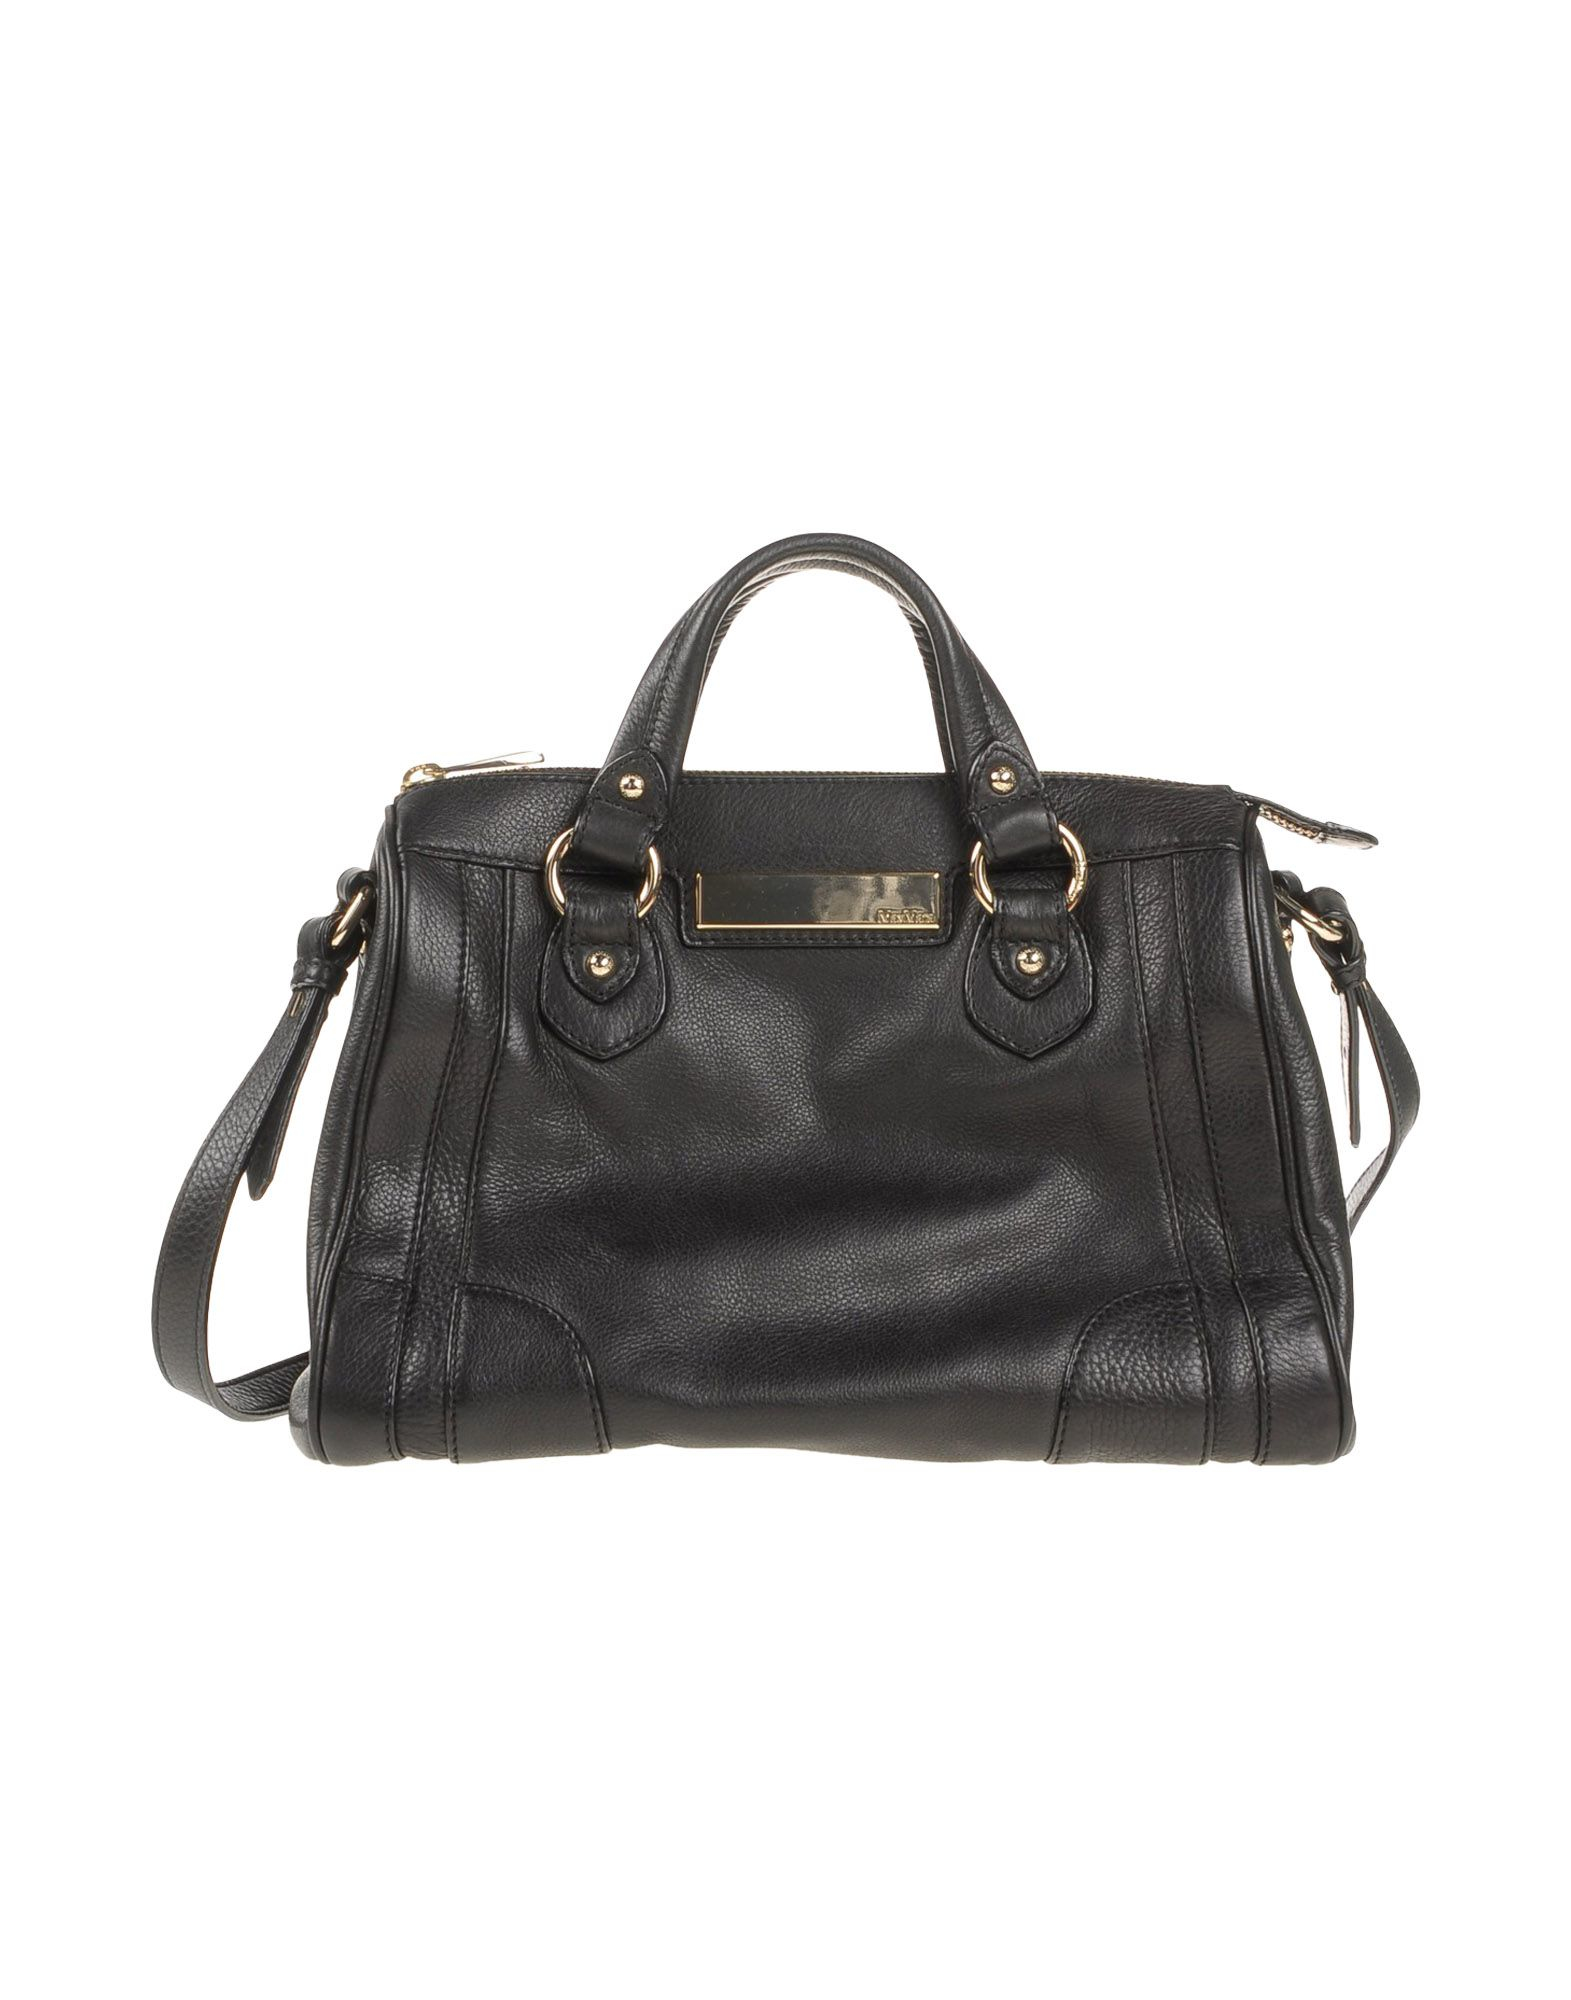 Lyst - Max Mara Handbag in Black